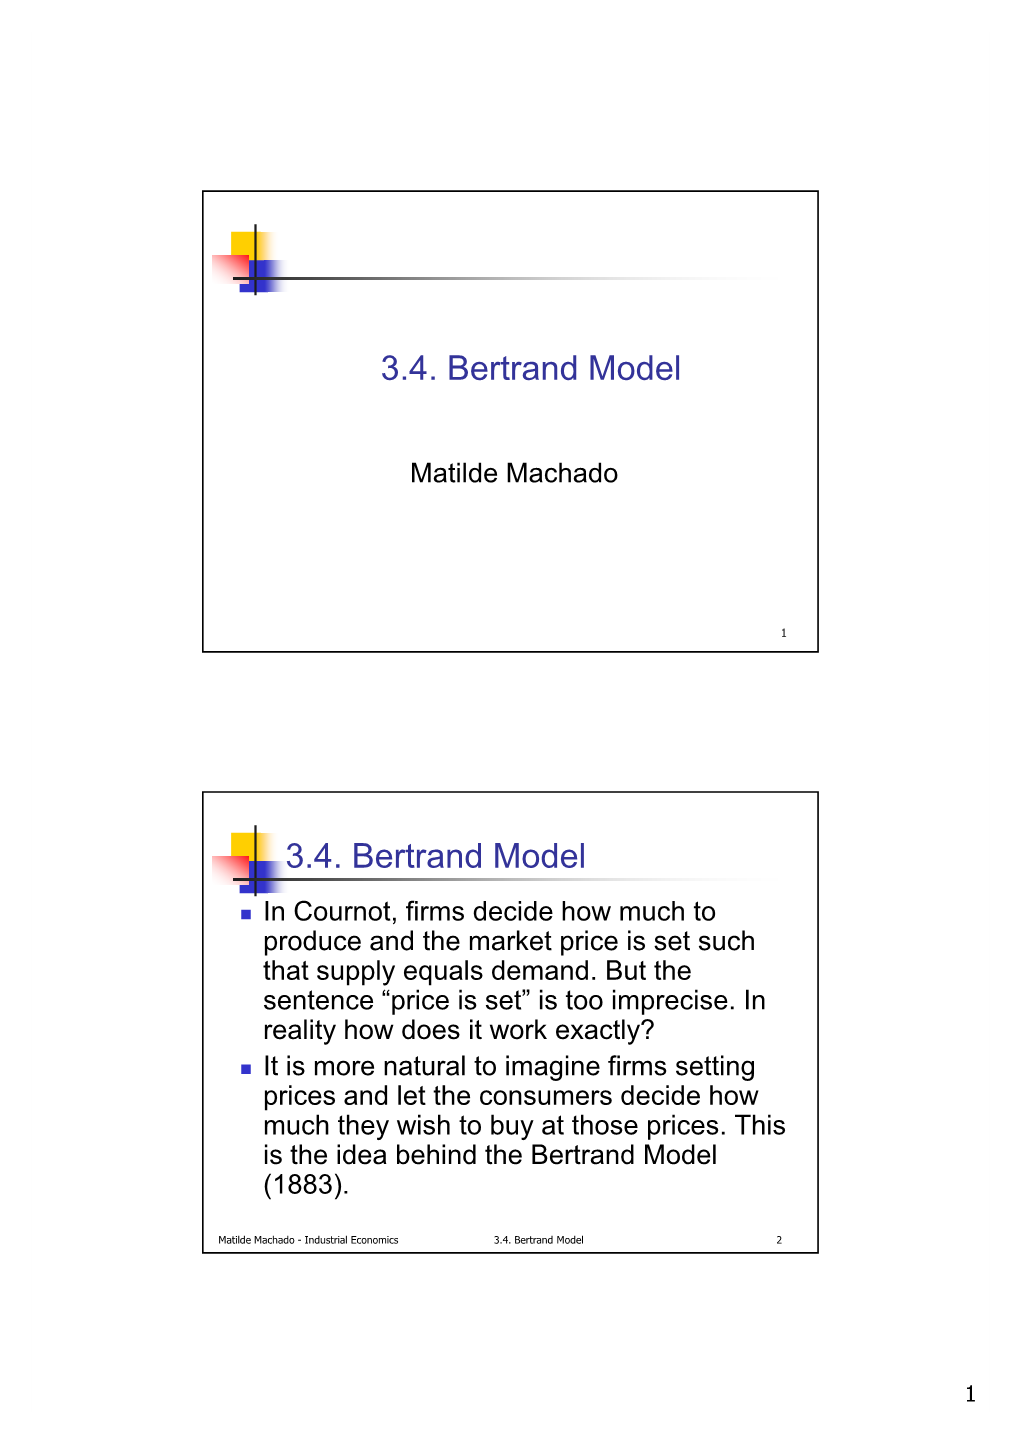 3.4.Bertrand Model